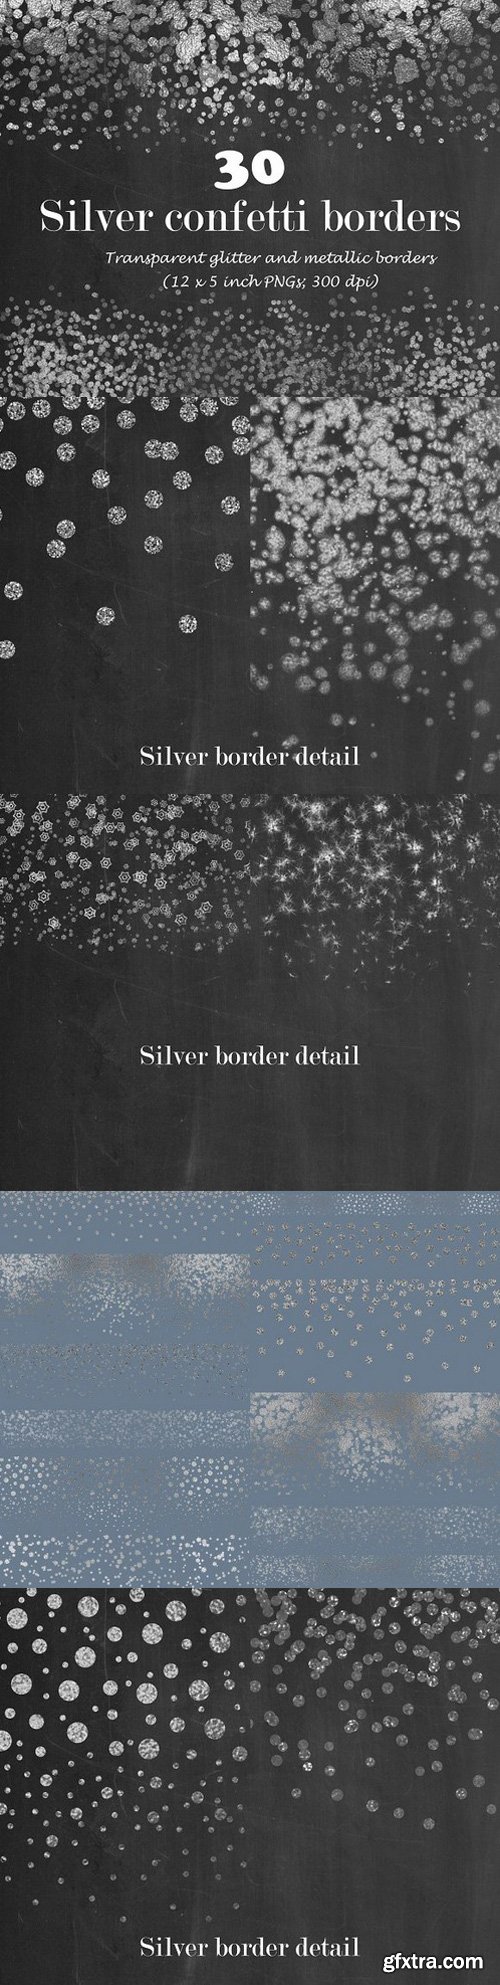 CM - Silver confetti border overlay 1110060